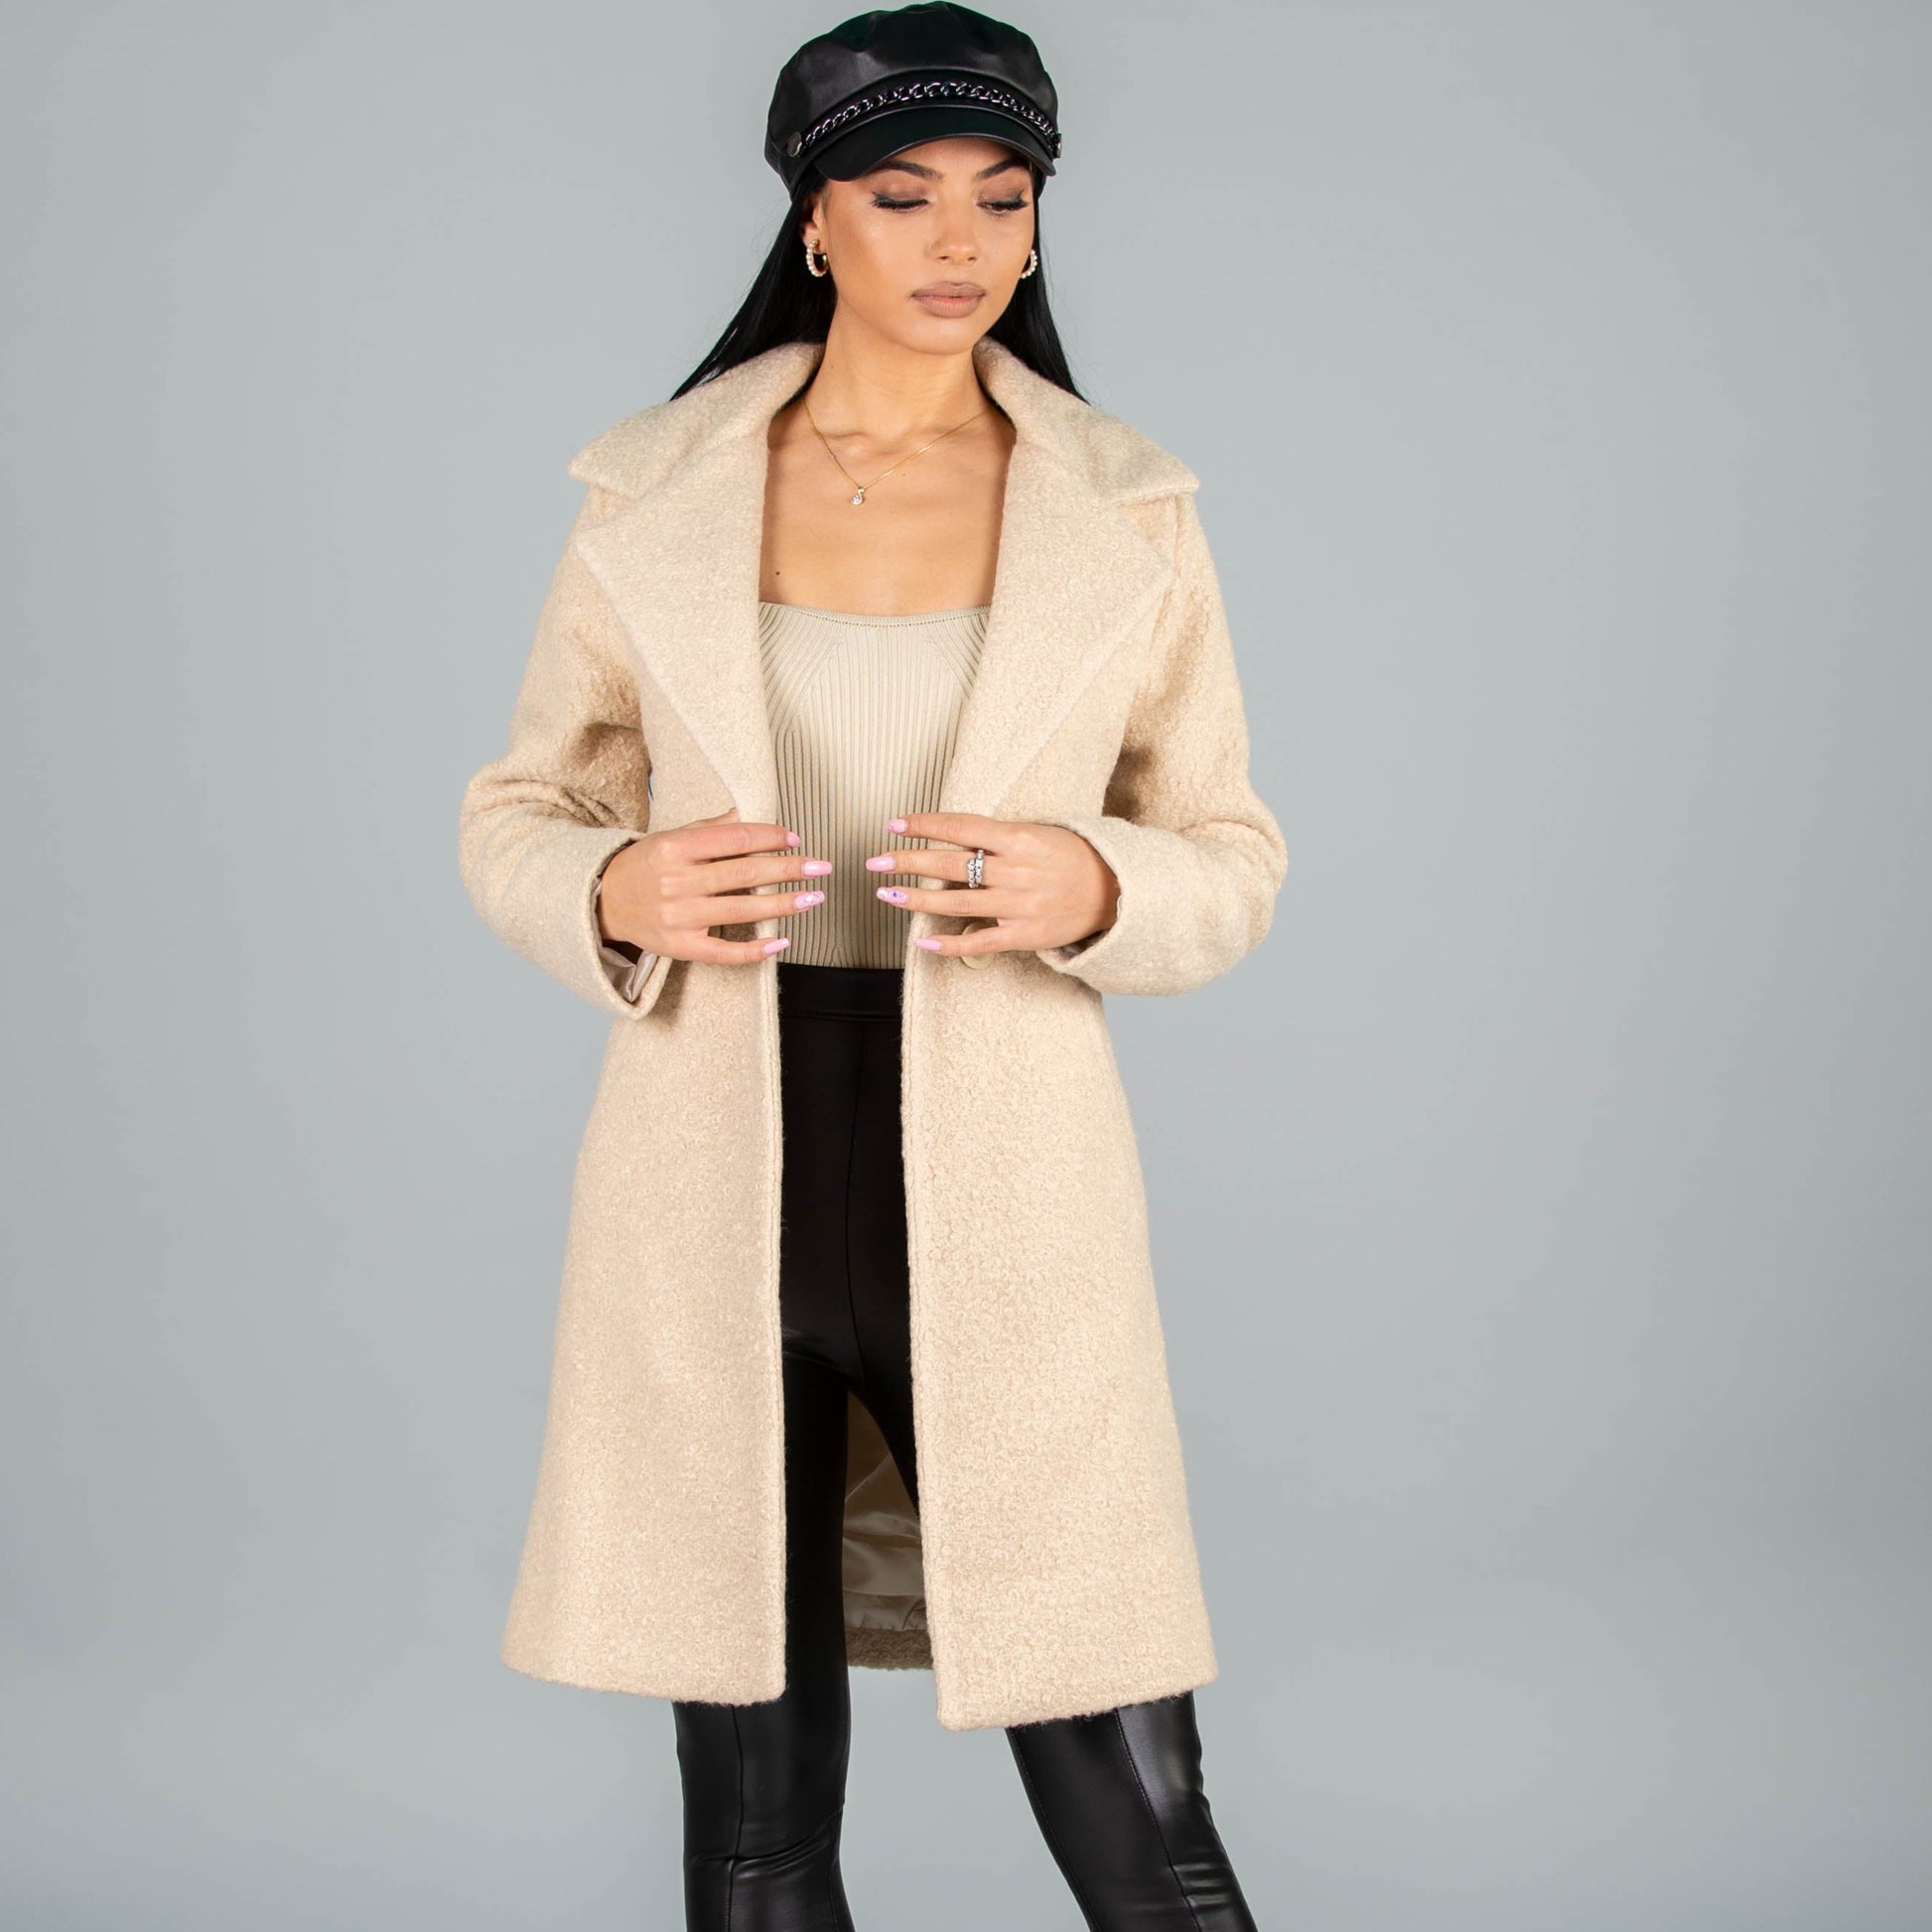 Дамско палто DIANA  https://bvseductive.com/products/women-s-coats-diana  10 % вълна 90 % полиестер дамско палто в бежов цвят с ефектен ревер и закопчаване с копчета със странични джобове палтото е подходящо за преходните сезони